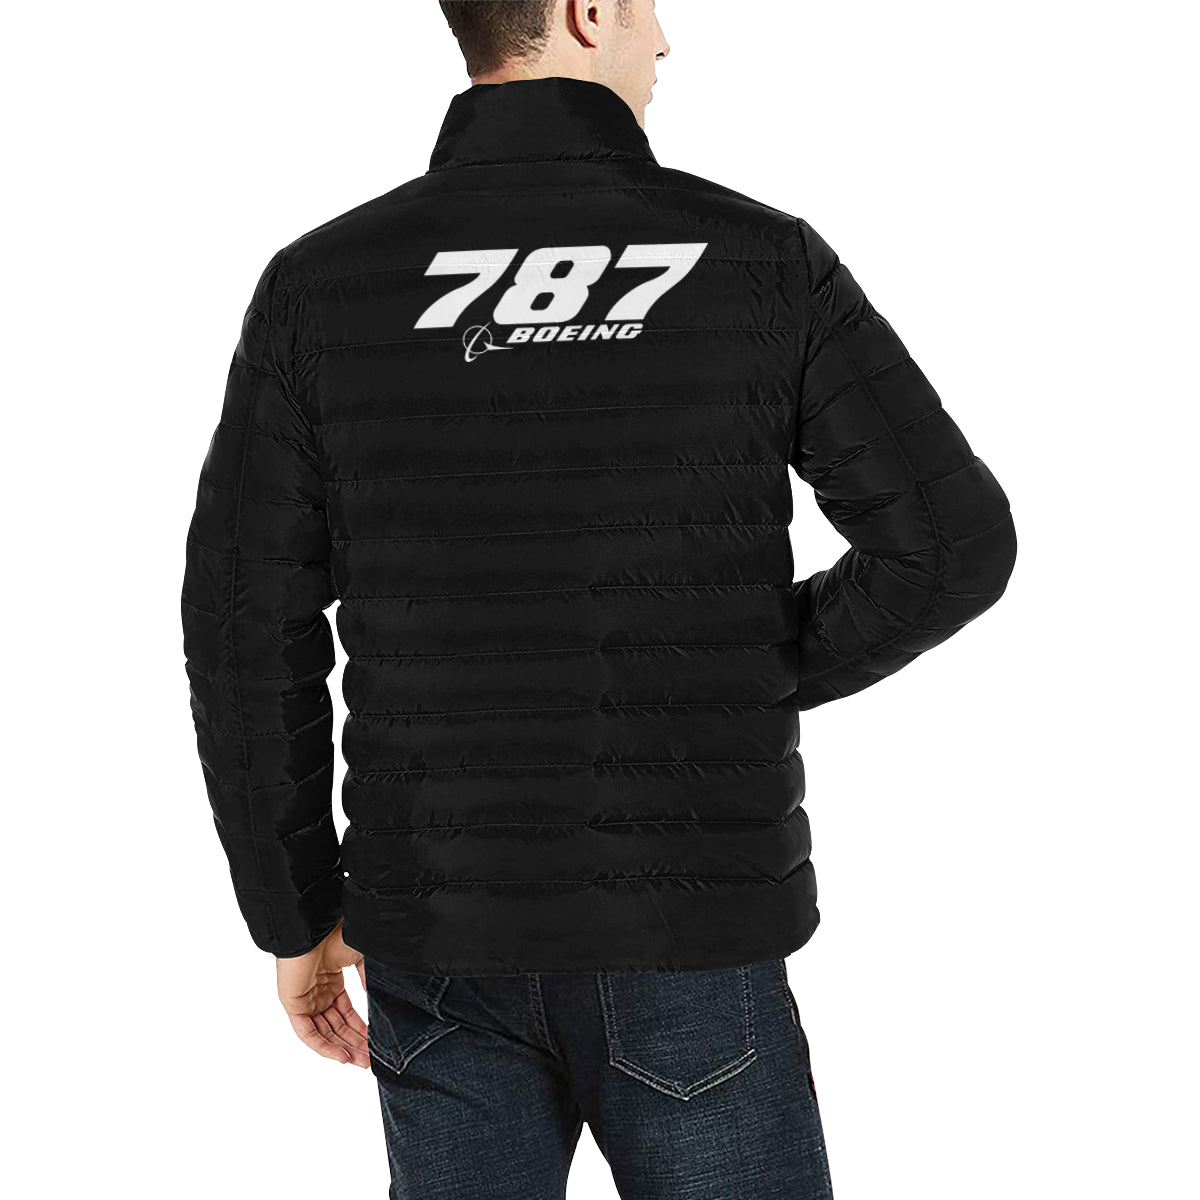 BOEING -787 Men's Stand Collar Padded Jacket e-joyer